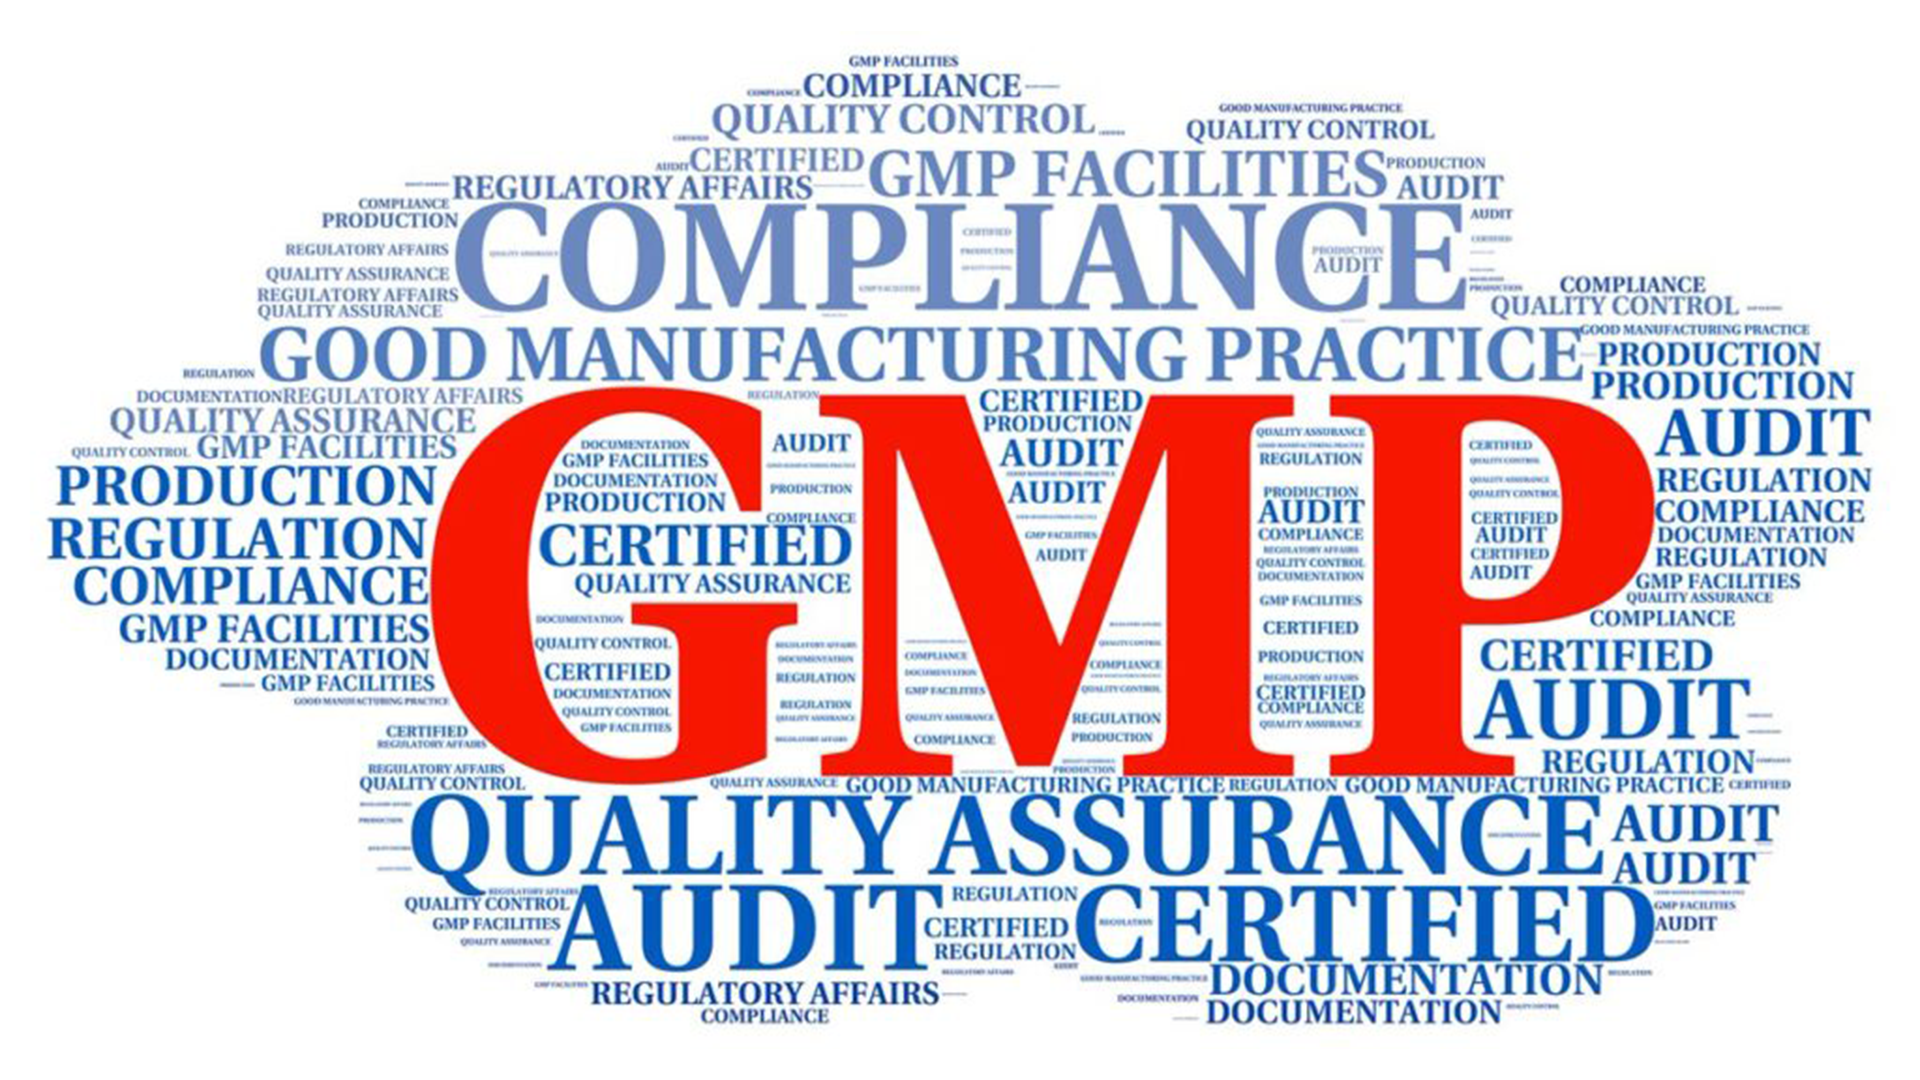 药品生产质量管理规范(GMP)